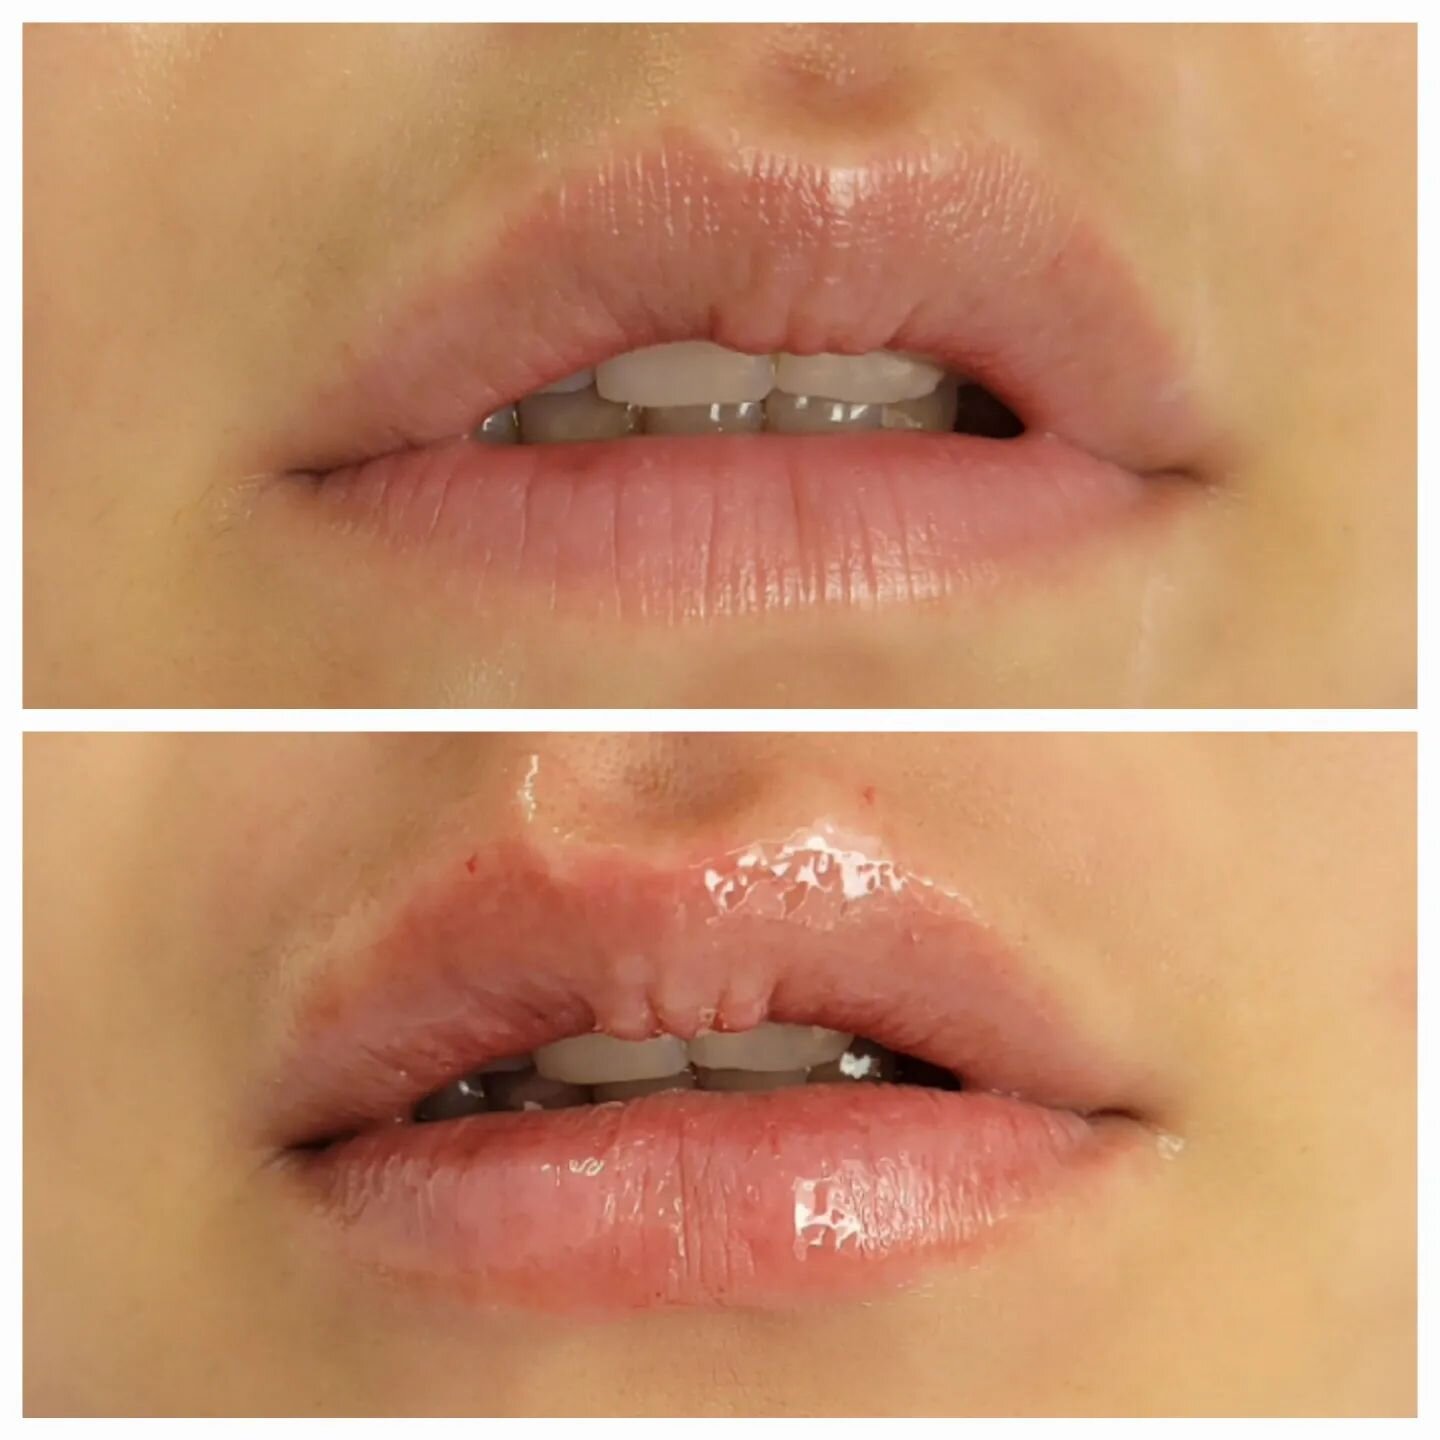 Hyaluronunterspritzung 
der Lippen nat&uuml;rlich?
Ja, aufgespritzte&nbsp;Lippen k&ouml;nnen nat&uuml;rlich&nbsp;wirken. Die neue Behandlung Belotero Lips, die auf zwei Fillern basiert, bringt im Ergebnis volle und wohlgeformte&nbsp;Lippen&nbsp;, ohn